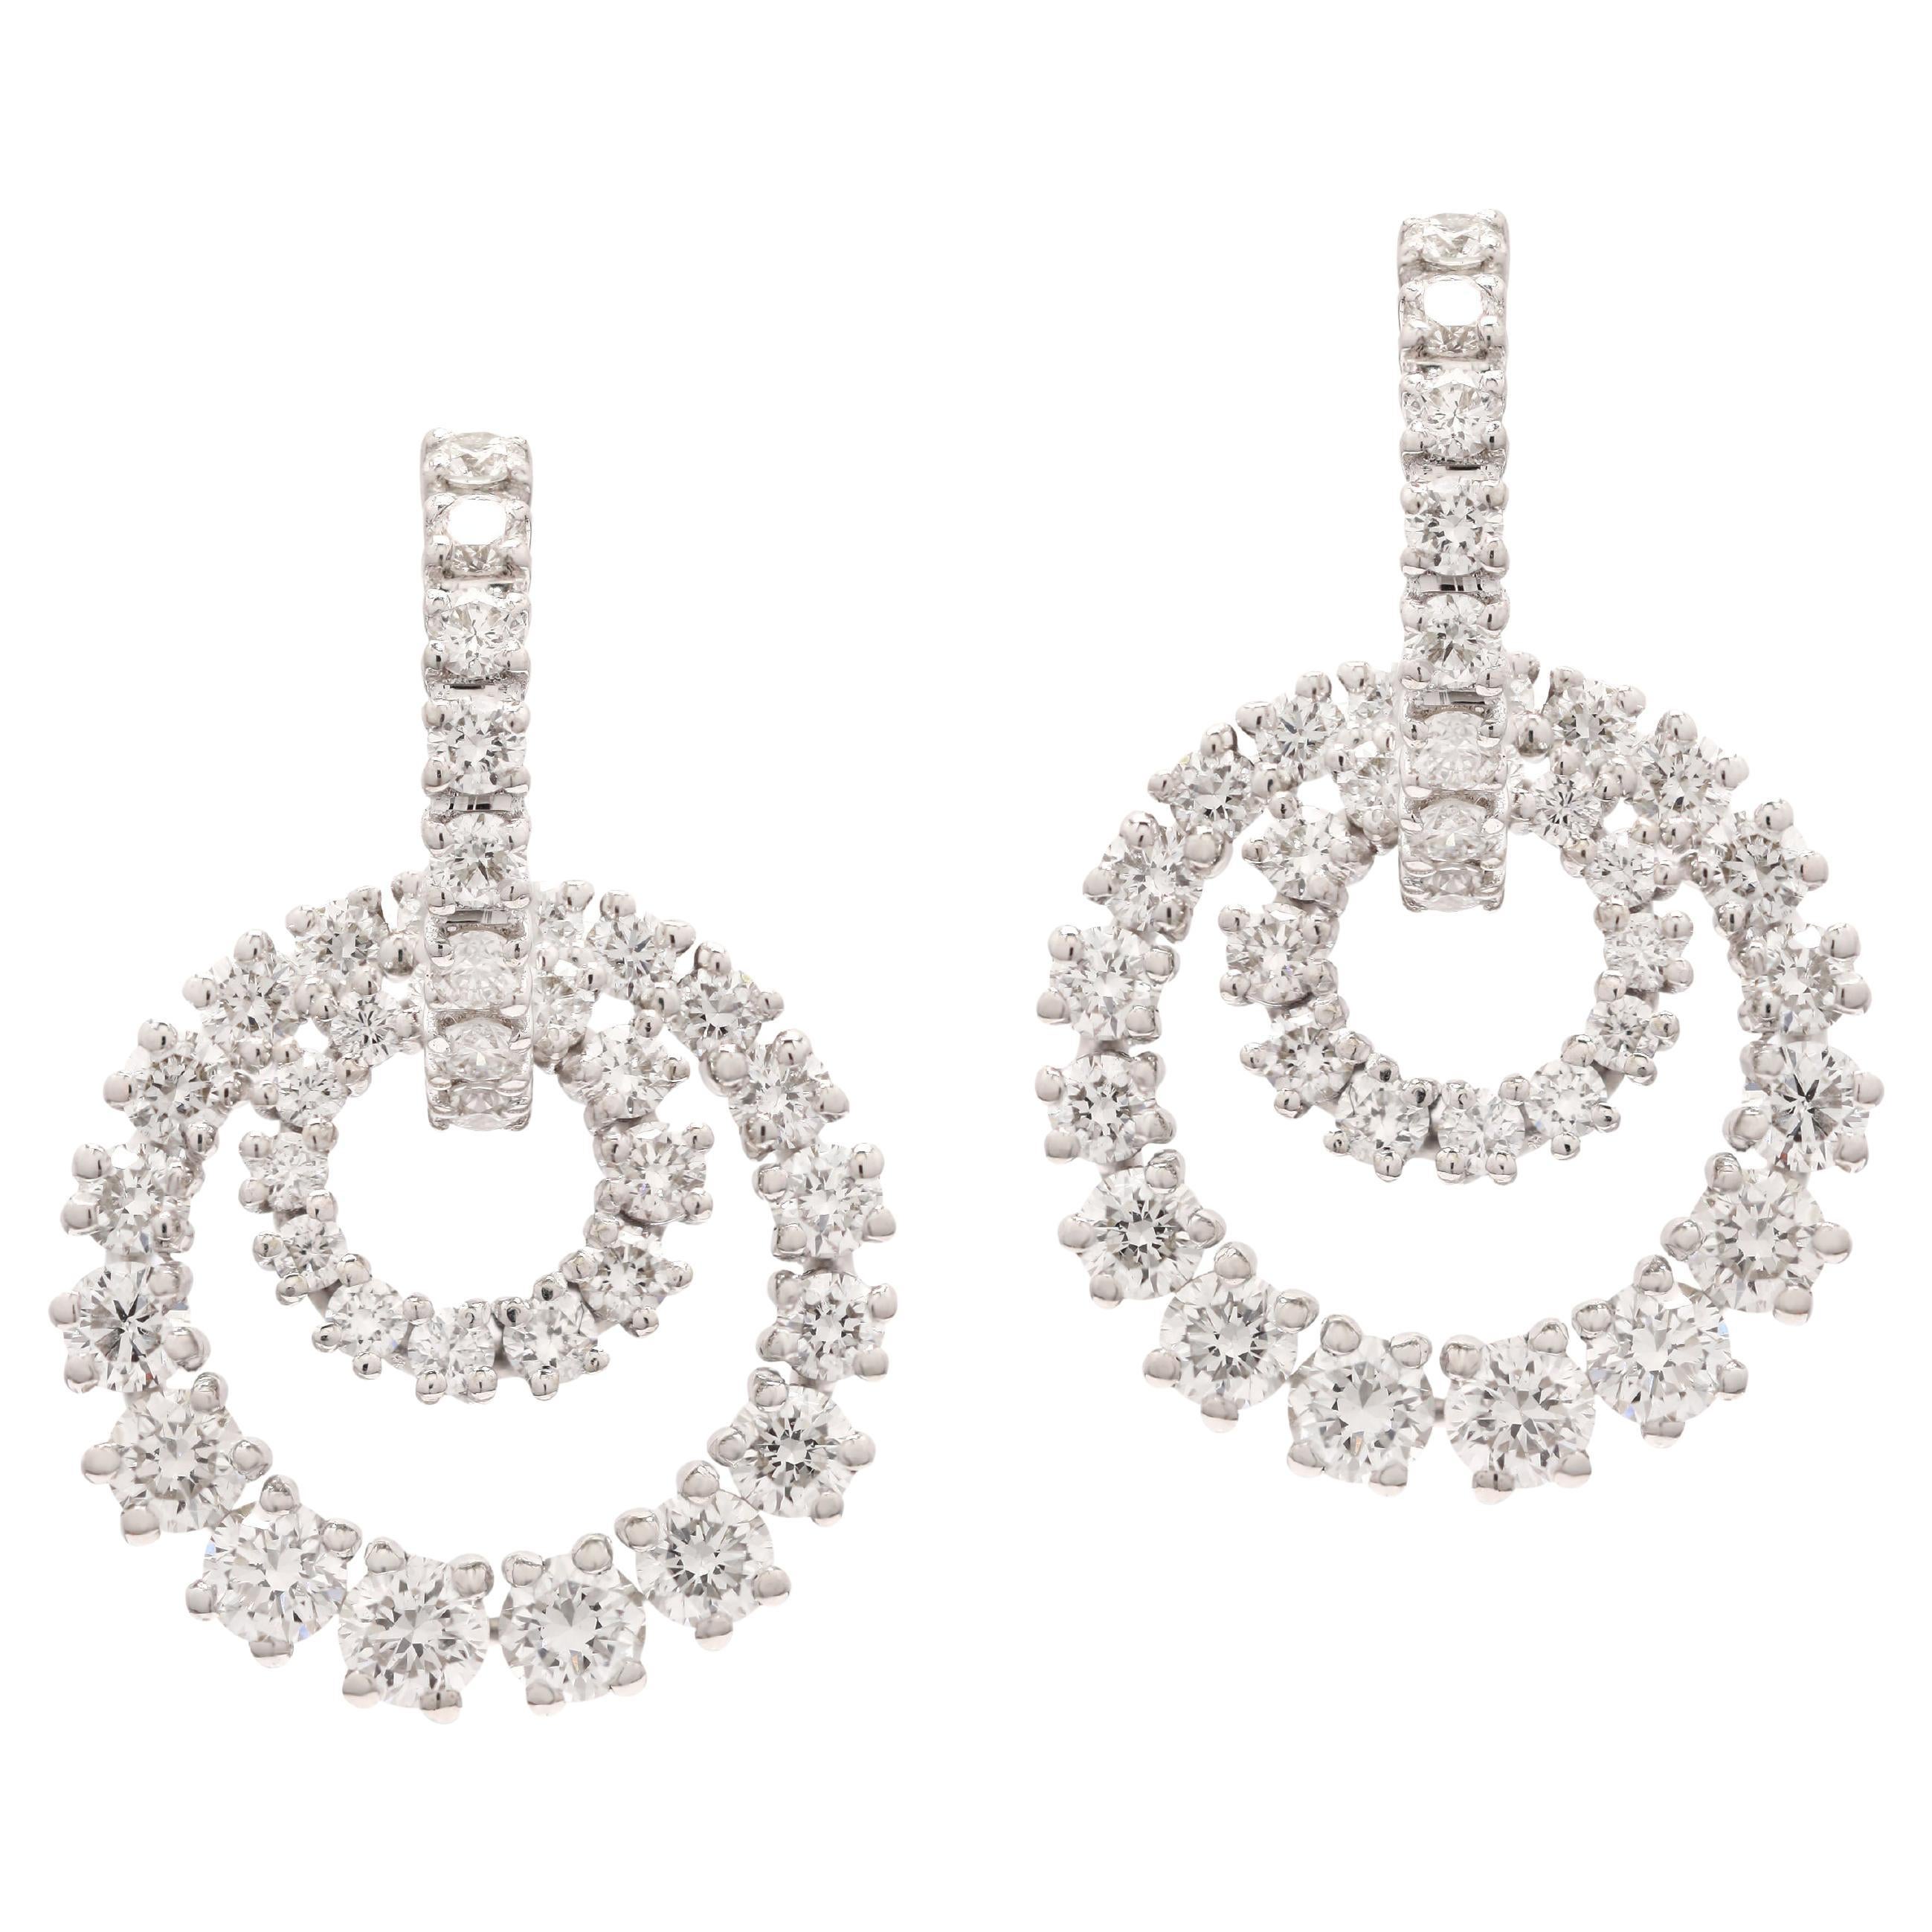 Circle Diamond Party Dangle Earrings für Frauen in 18K Gold, um mit Ihrem Look ein Statement zu setzen. Sie brauchen baumelnde Ohrringe, um mit Ihrem Look ein Statement zu setzen. Diese Ohrringe sorgen für einen funkelnden, luxuriösen Look mit